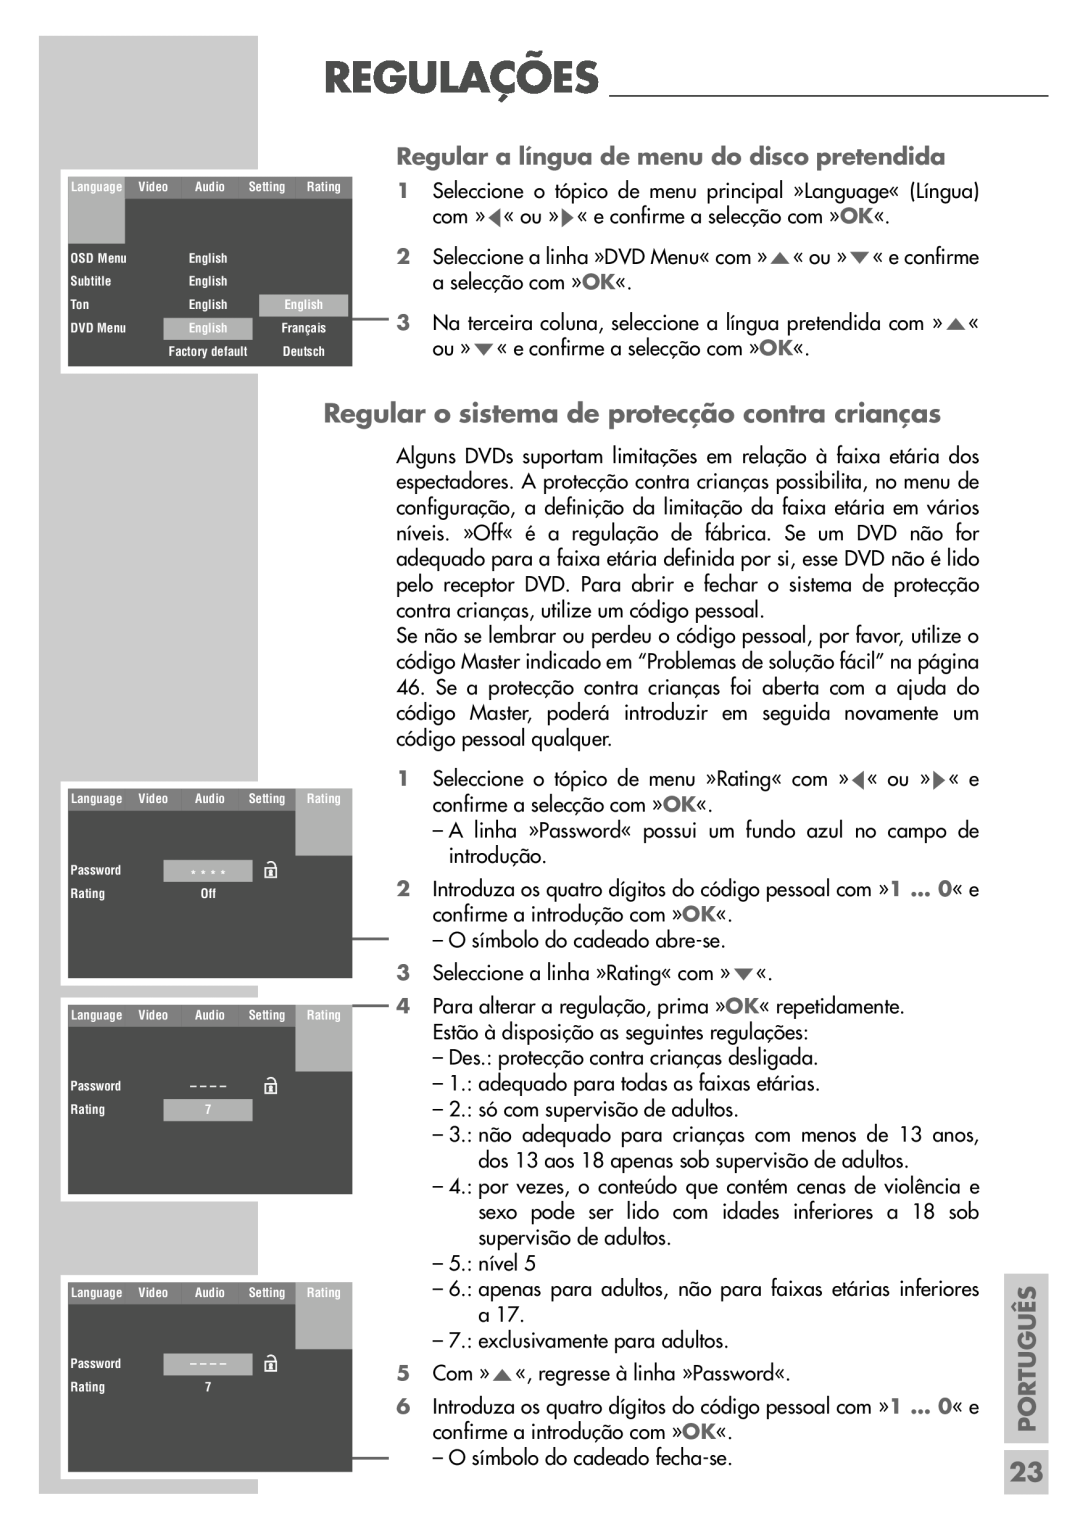 Grundig DR 5400 DD Regular o sistema de protecção contra crianças, Regular a língua de menu do disco pretendida, Português 